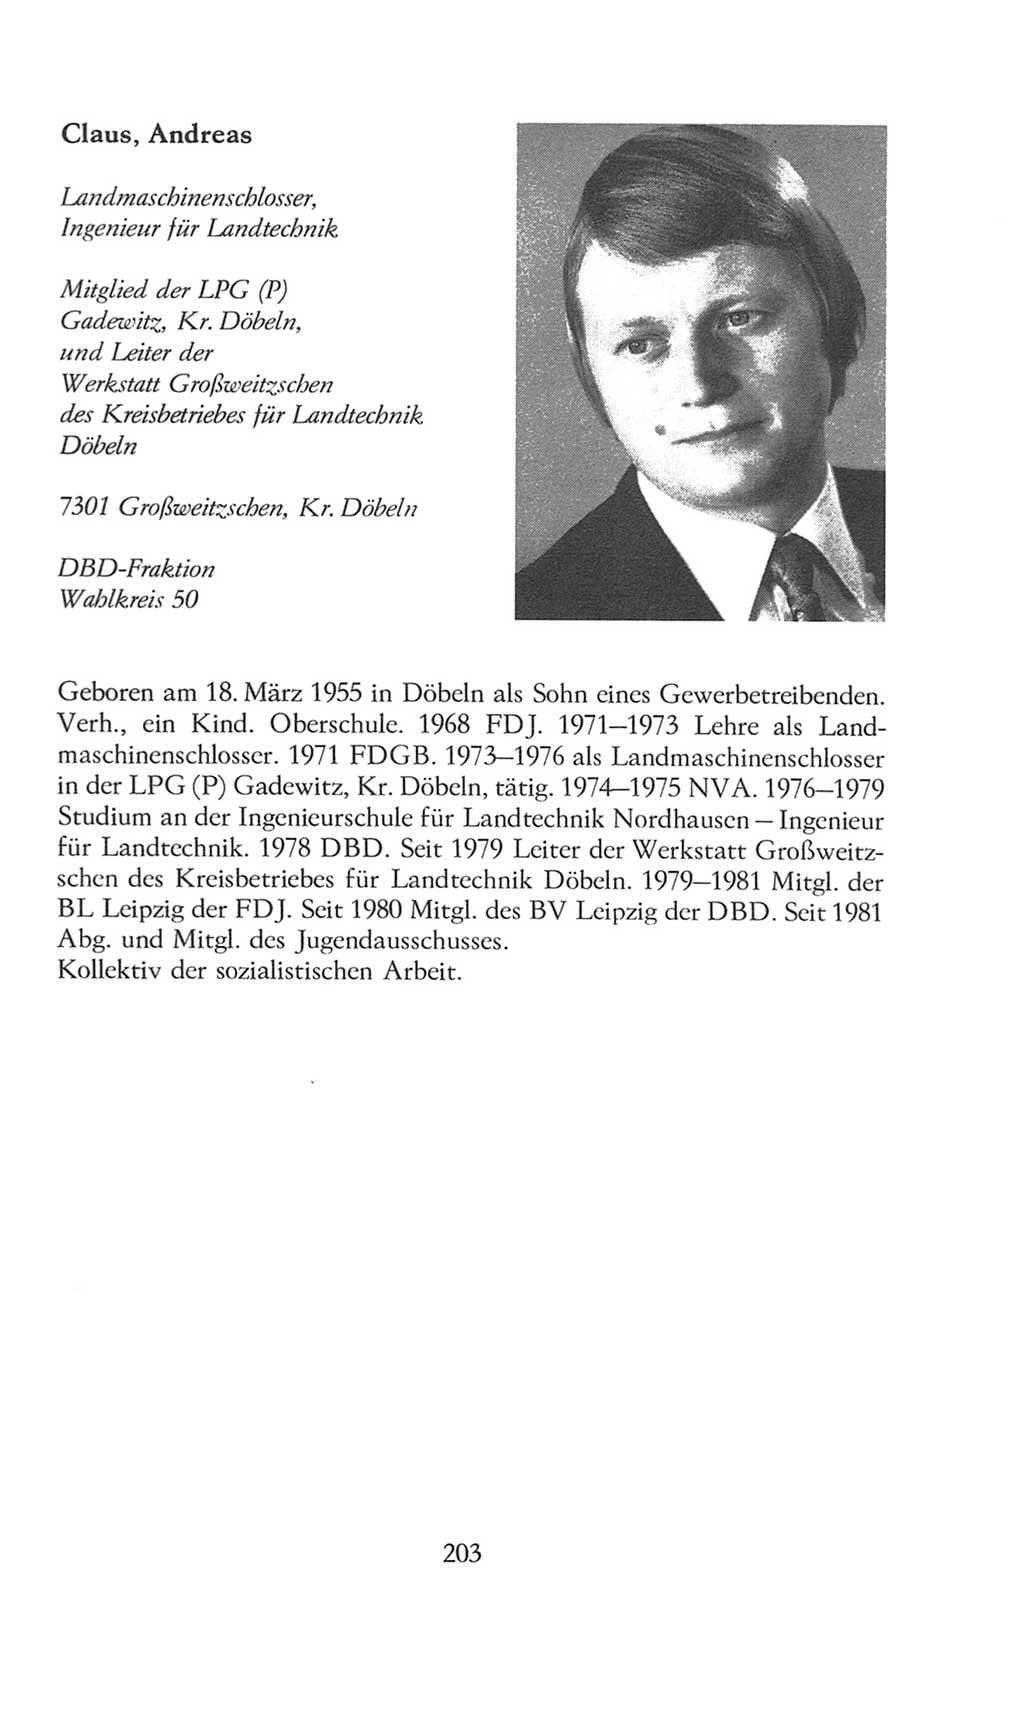 Volkskammer (VK) der Deutschen Demokratischen Republik (DDR), 8. Wahlperiode 1981-1986, Seite 203 (VK. DDR 8. WP. 1981-1986, S. 203)